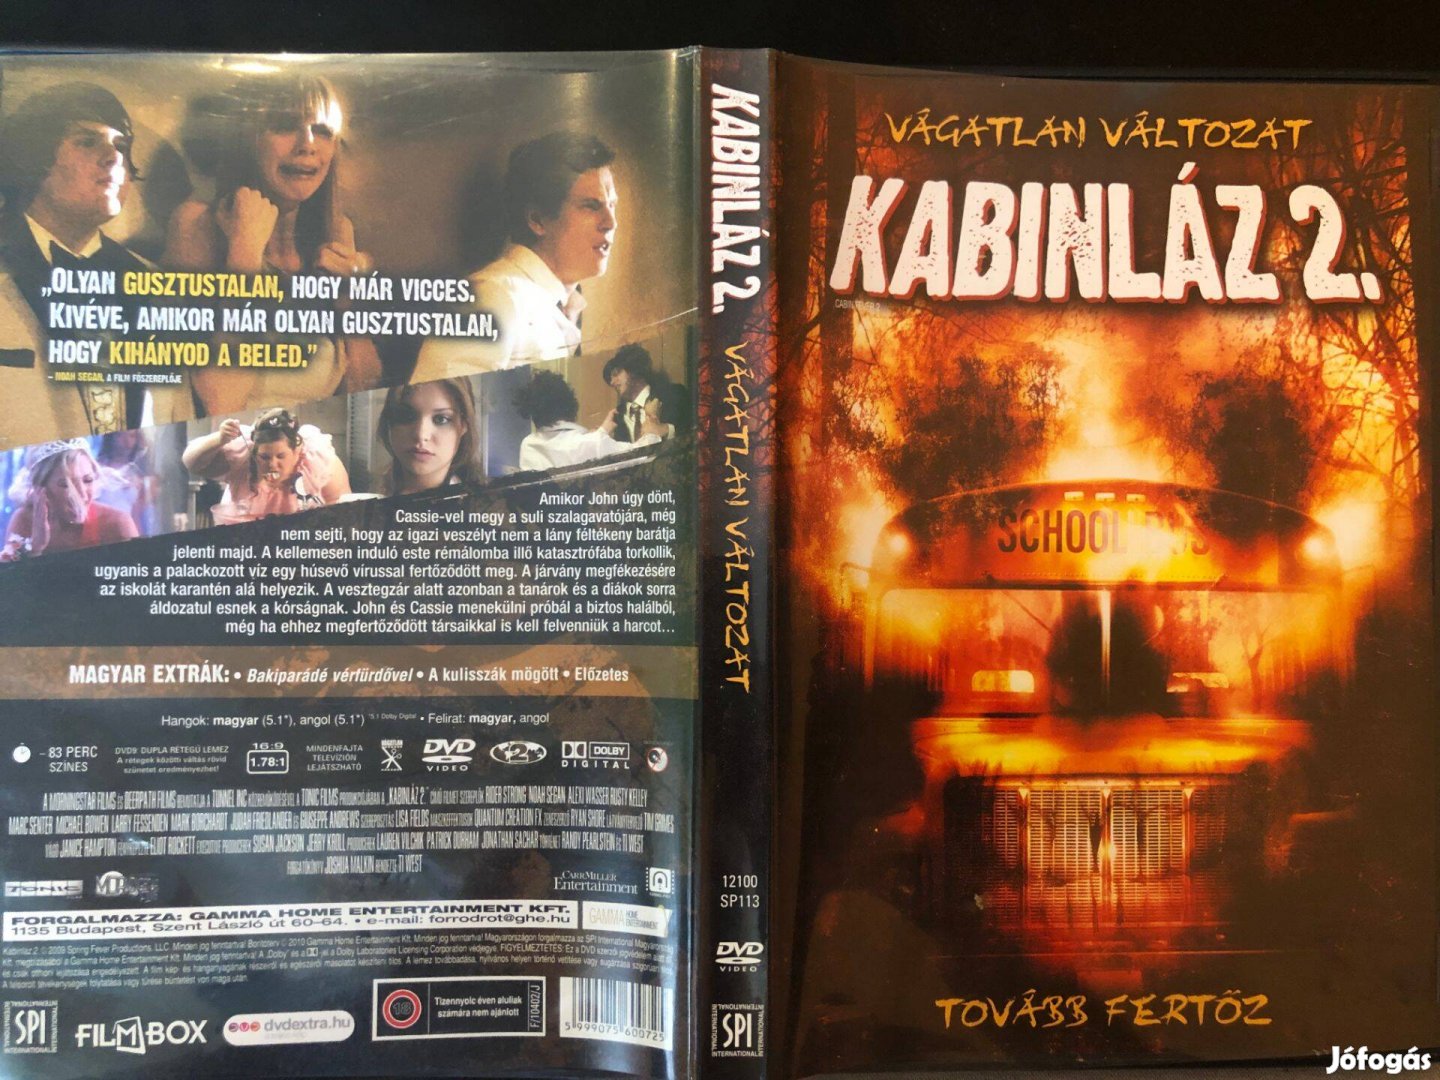 Kabinláz 2. (karcmentes, vágatlan változat) DVD